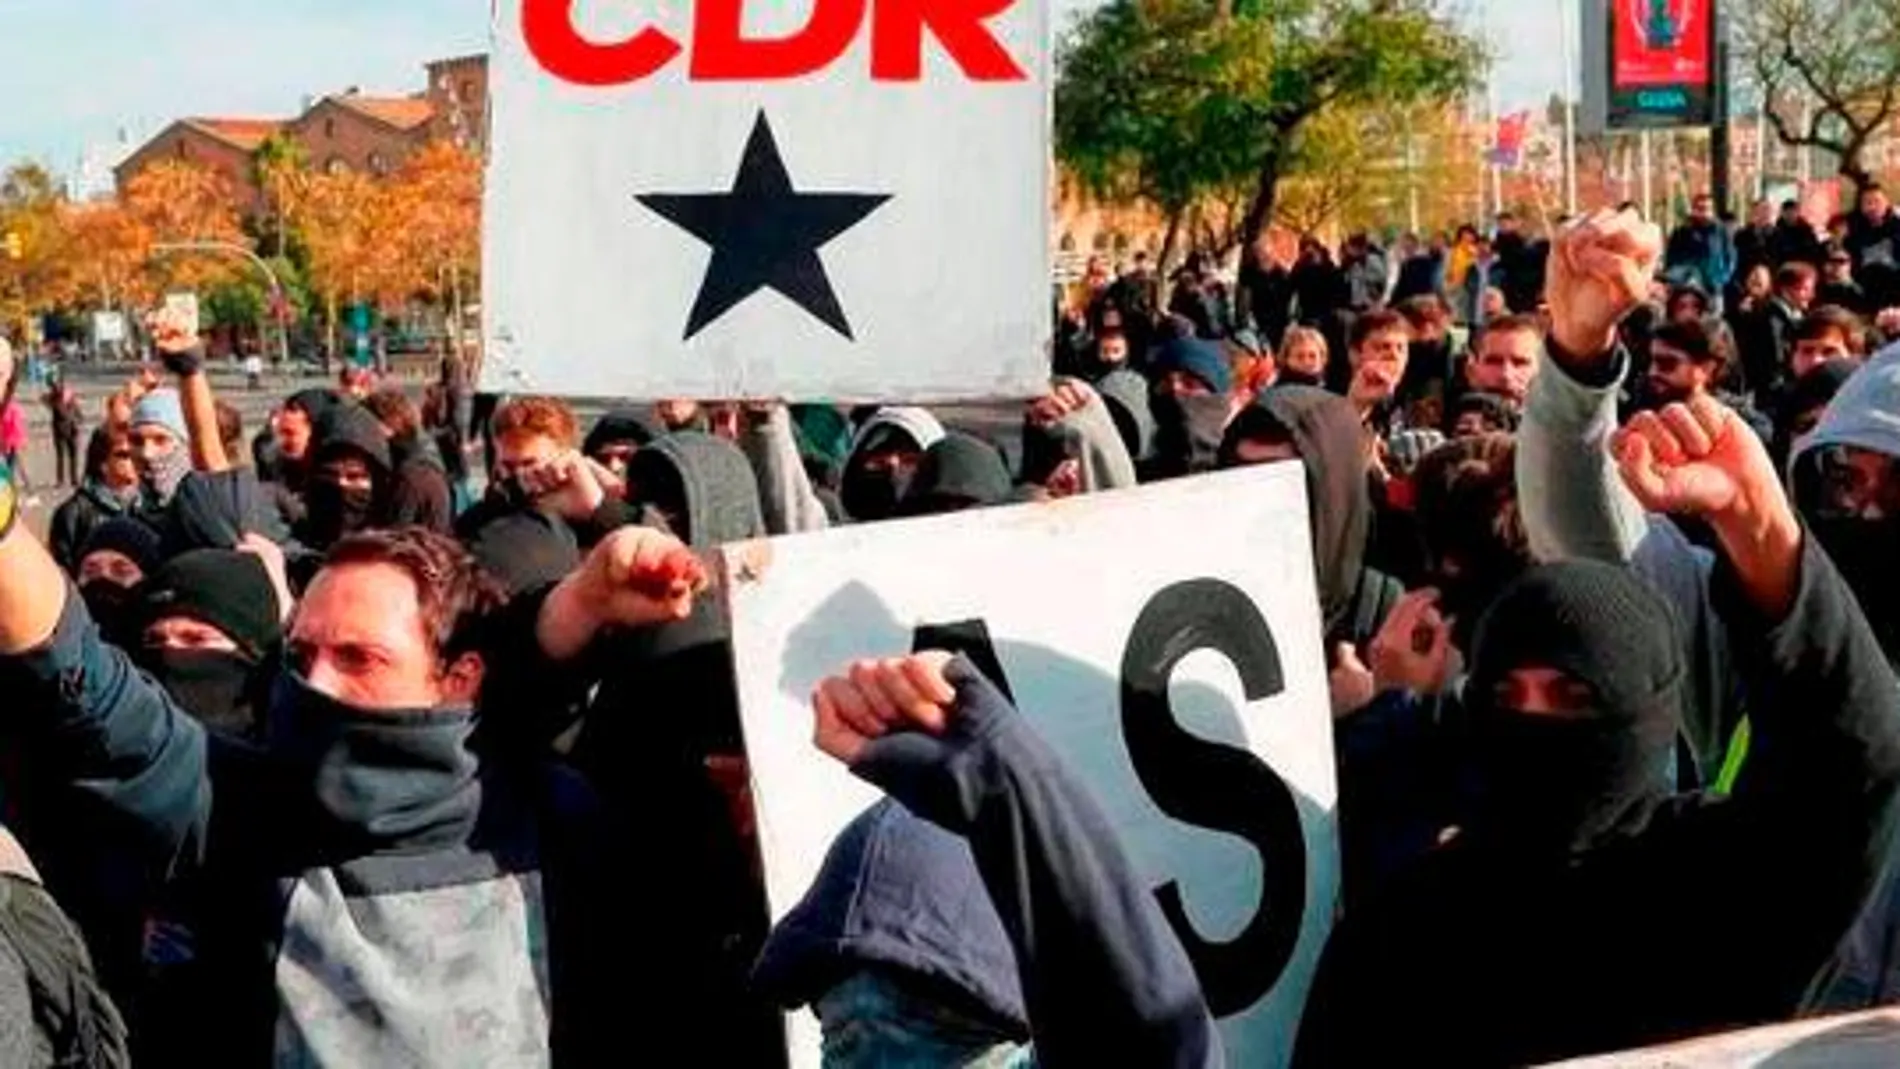 Los CDR anuncian acciones “contundentes” para implantar el caos en Cataluña